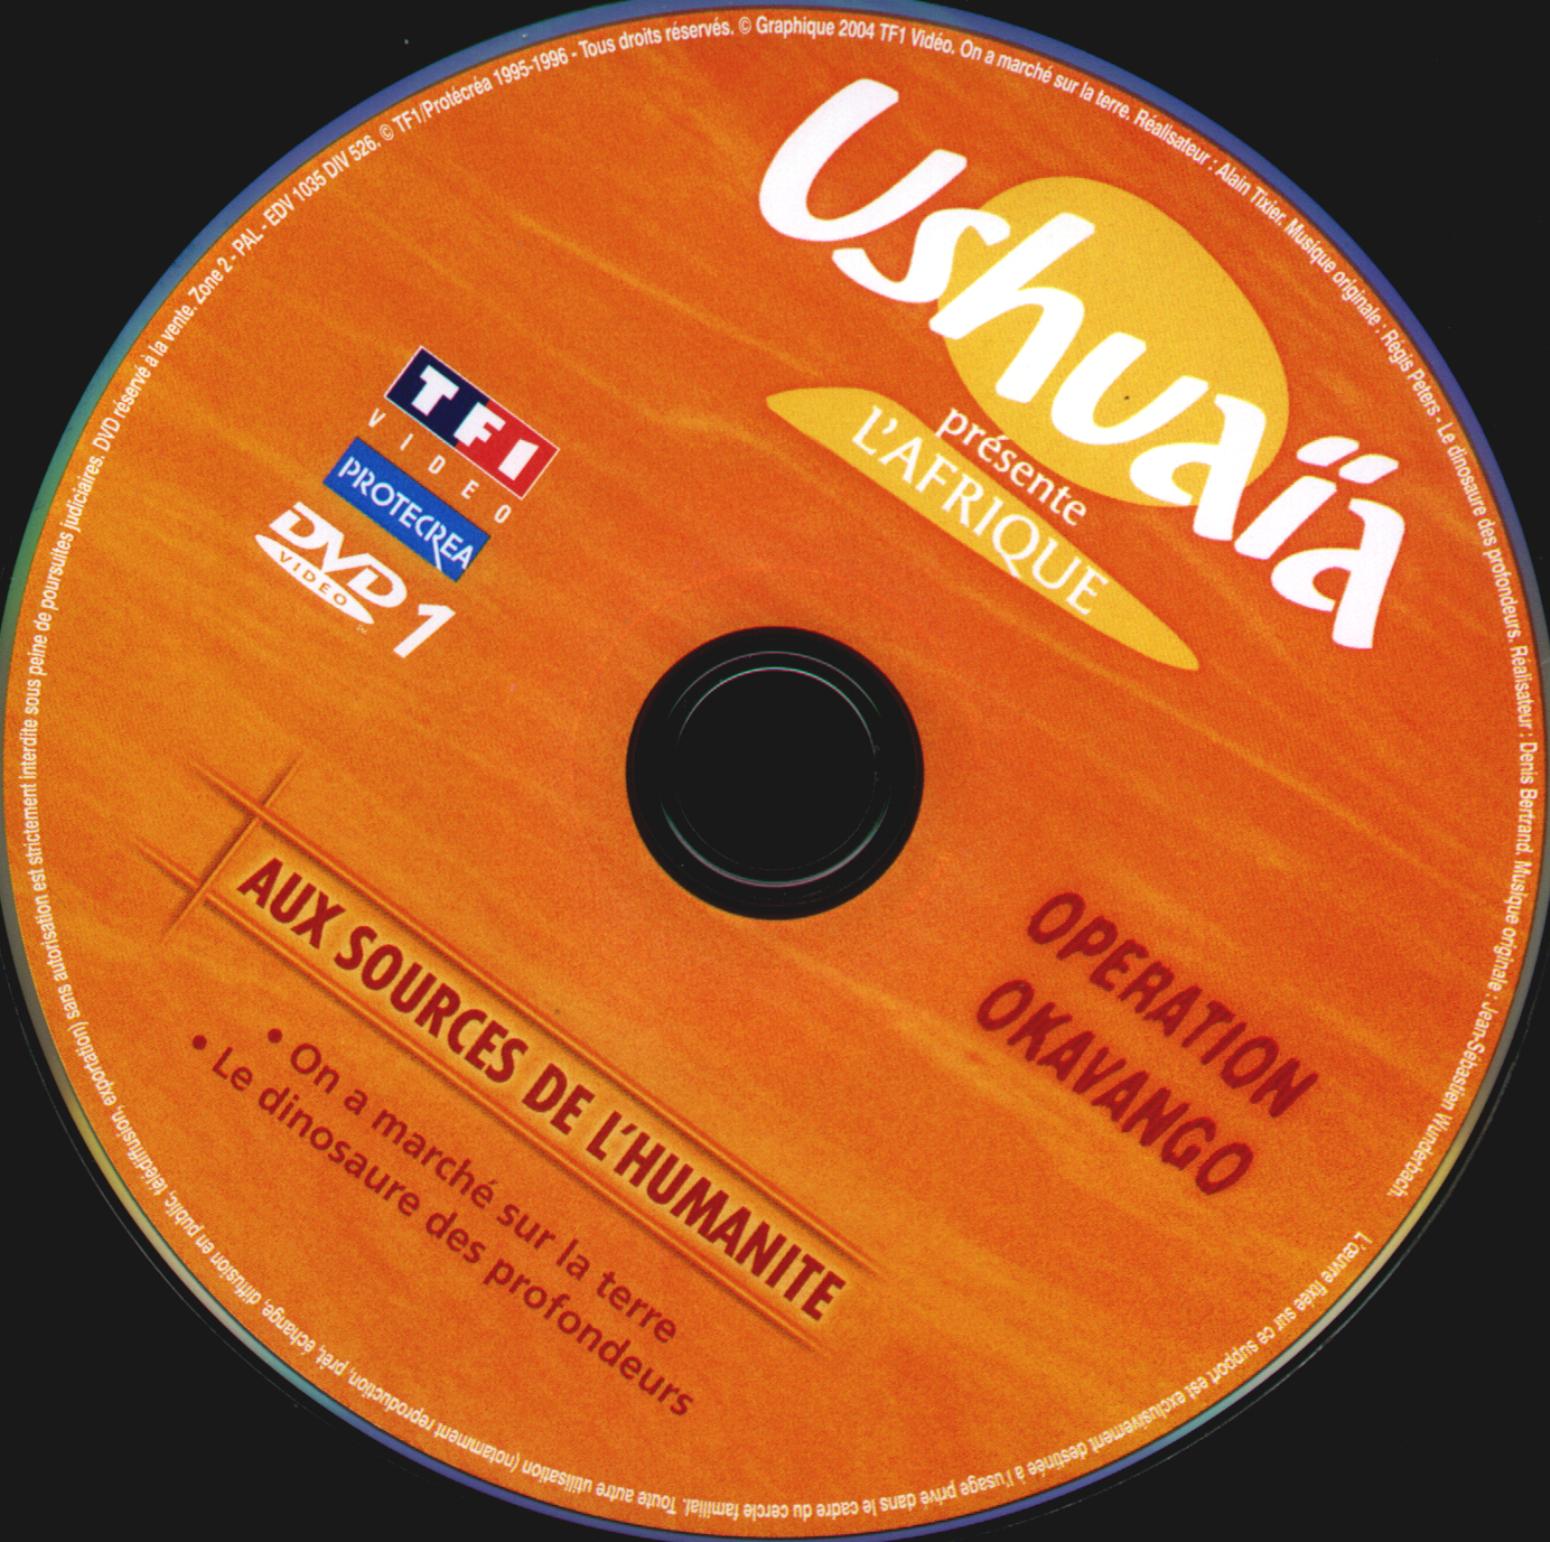 Ushuaia - Aux sources de l